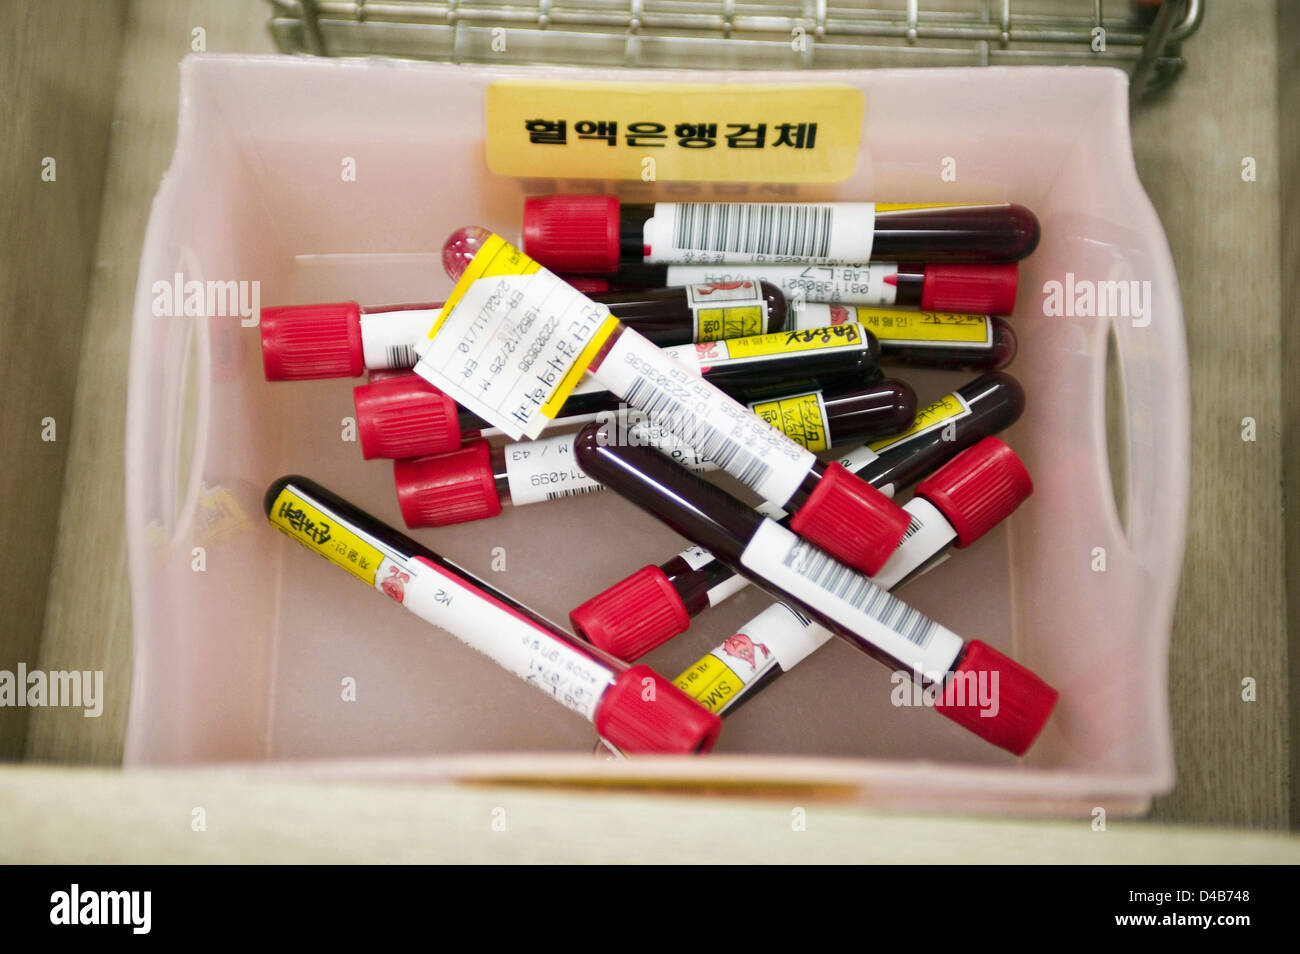 Blut des Patienten wird in Flaschen abgefüllt und beschriftet vorherige untersucht werden, um die Blutgruppe zu bestimmen Stockfoto